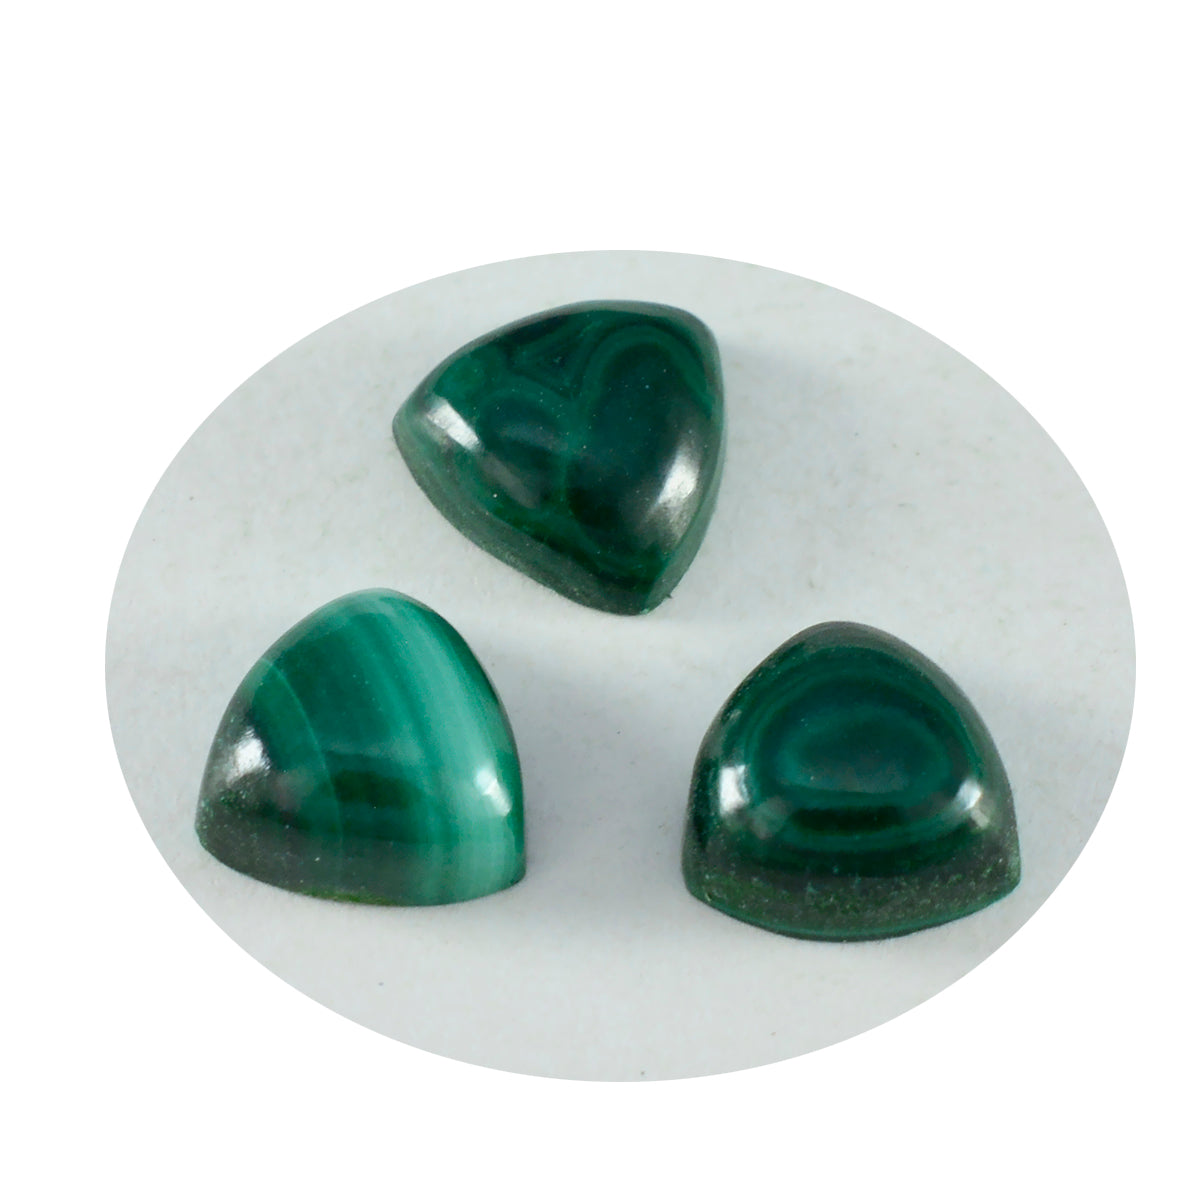 Riyogems 1 pieza cabujón de malaquita verde 7x7 mm forma de billón gemas sueltas de buena calidad